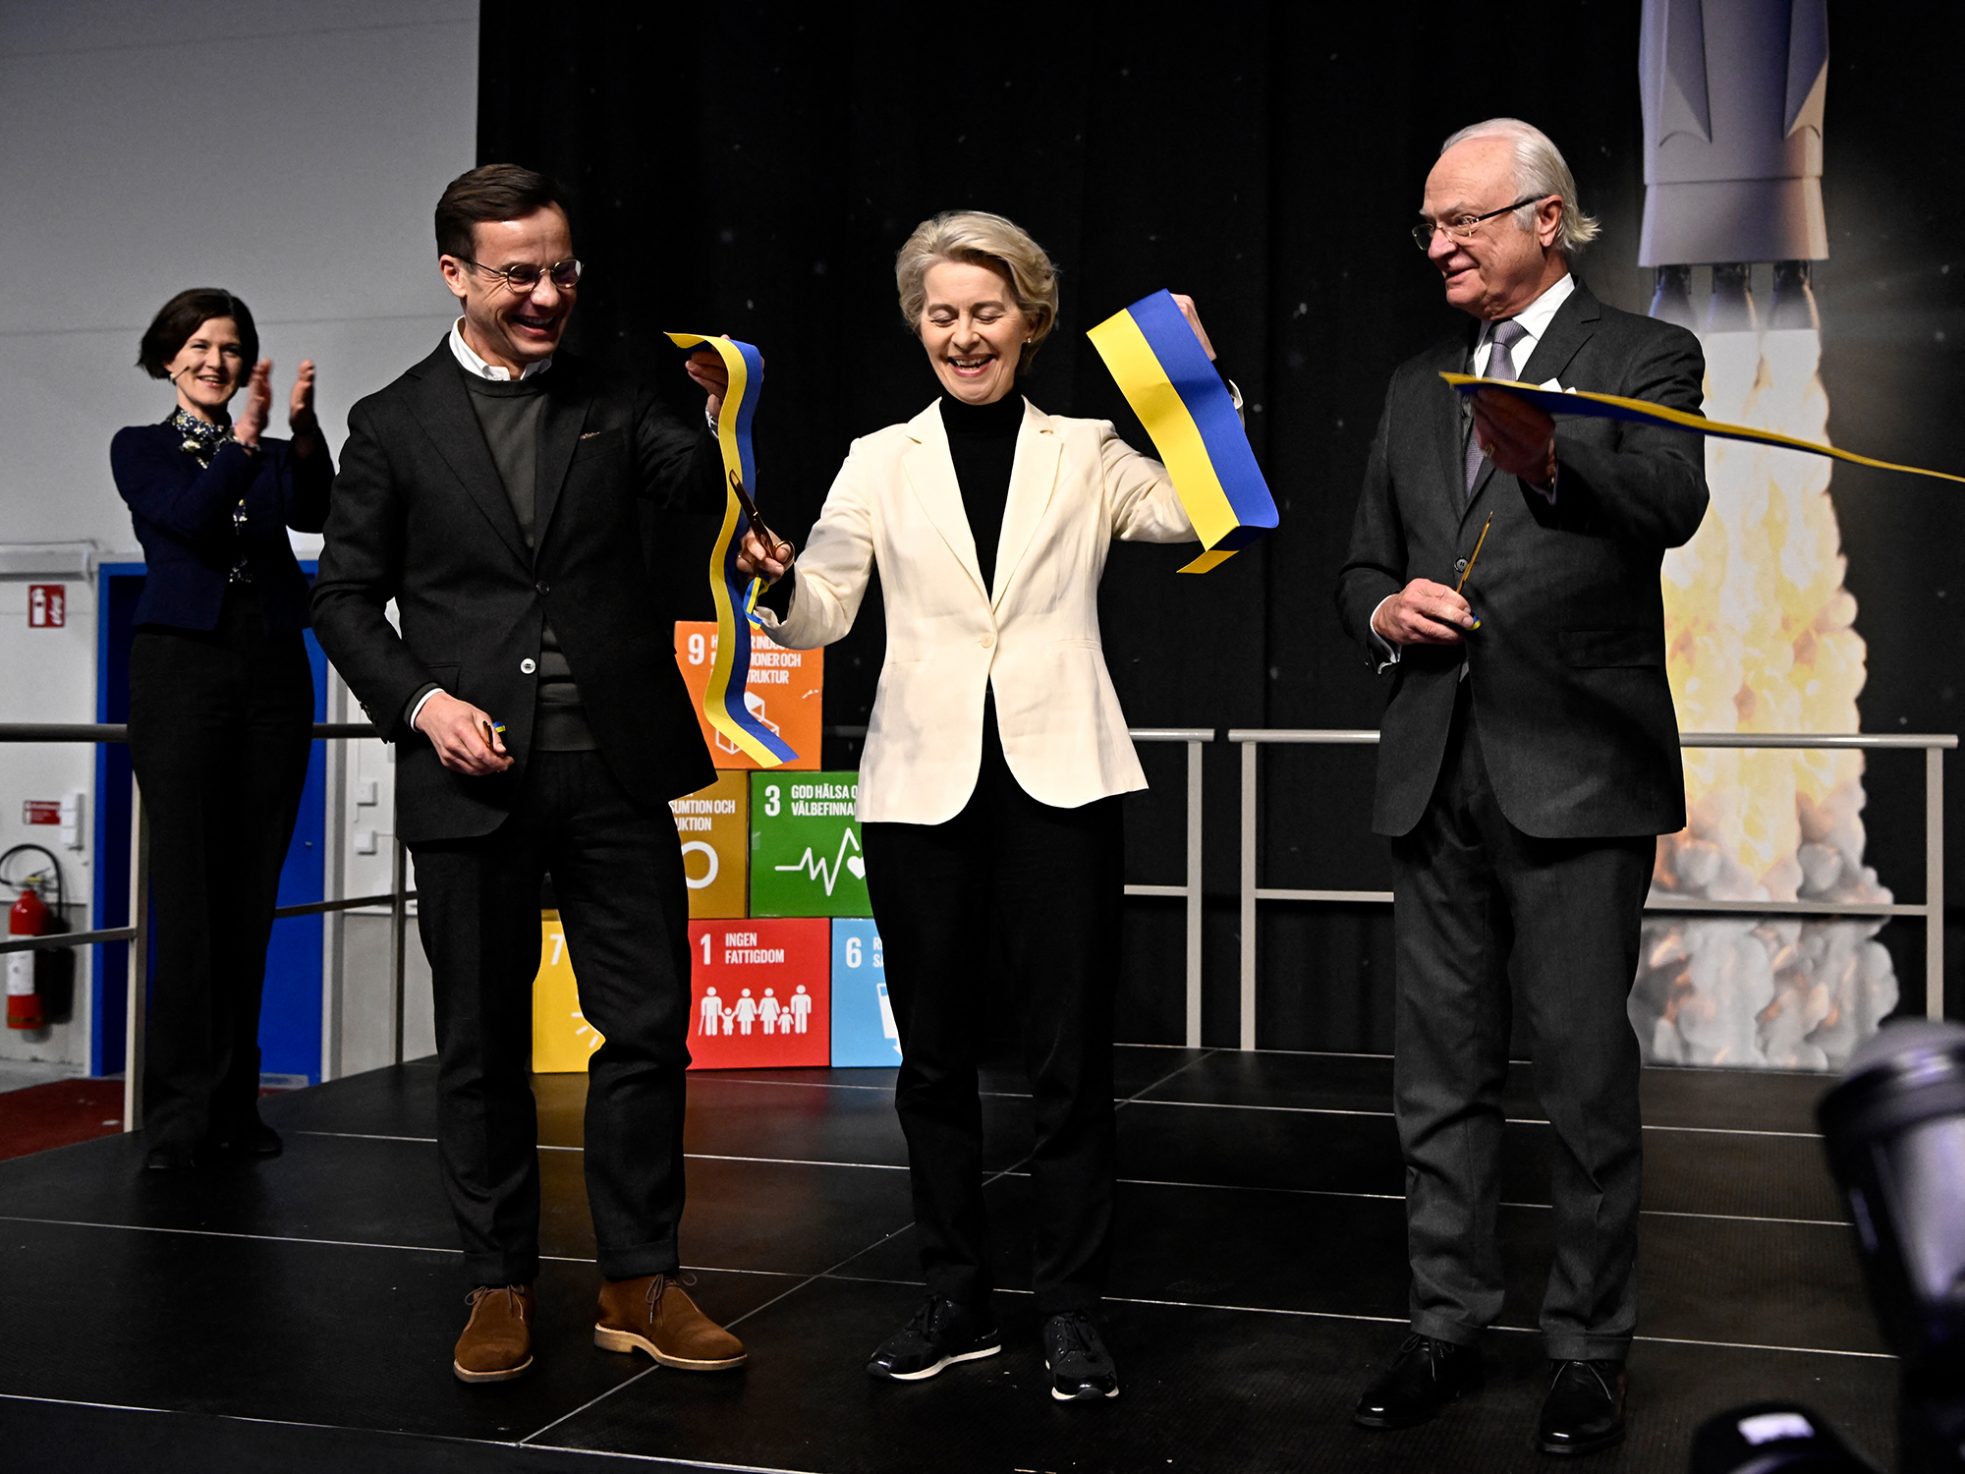 Premier Ulf Kristersson, EU-Kommissionspräsidentin Ursula von der Leyen und Schwedens König Carl Gustaf bei der Eröffnung (Bild: Jonas Ekstromer/TT News Agency/AFP)